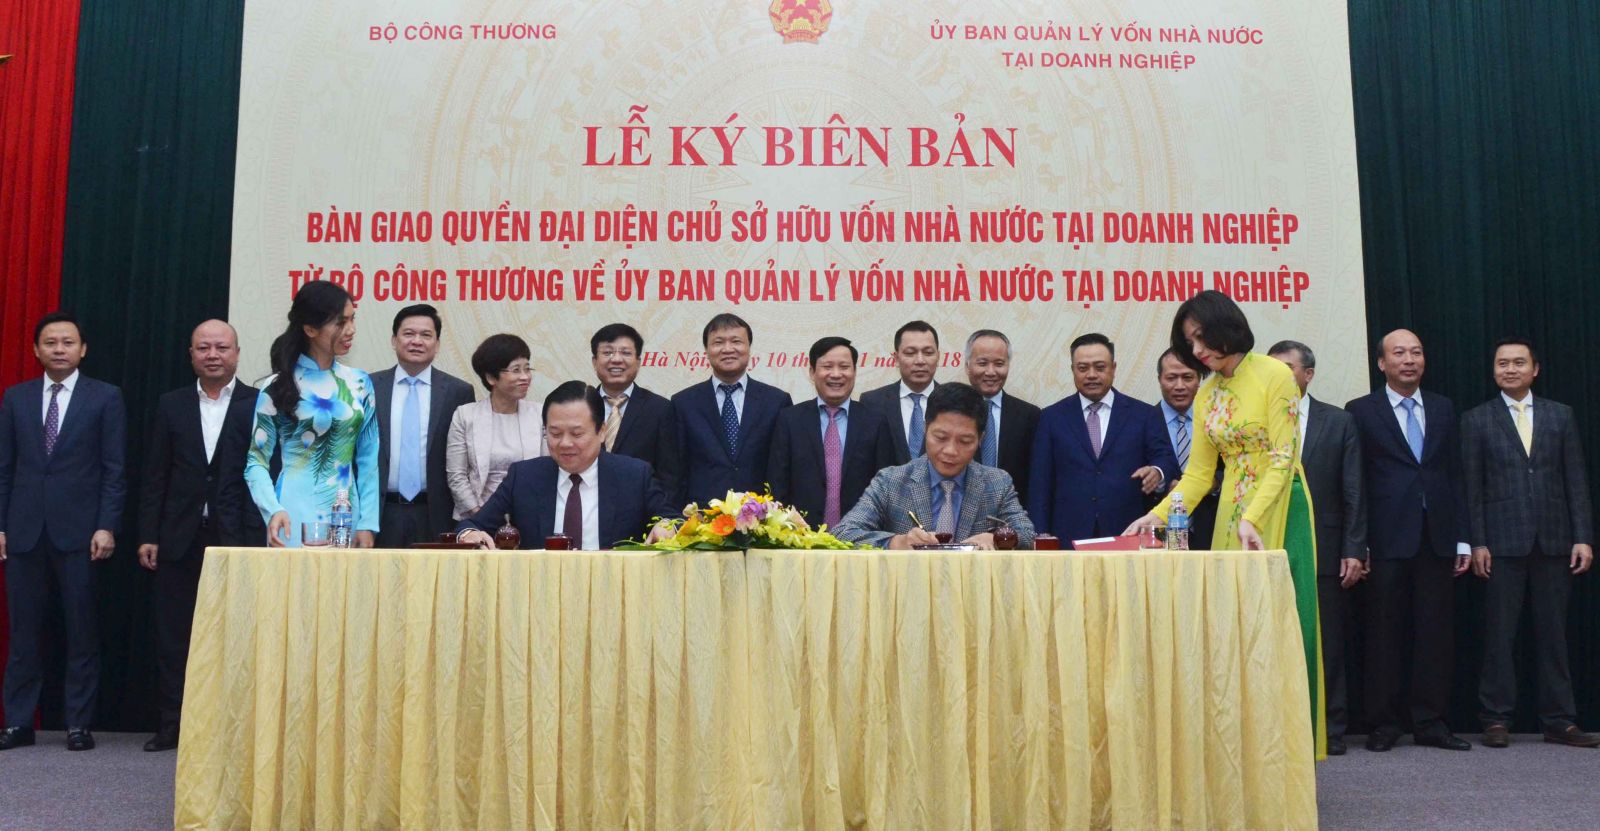 Bộ trưởng Trần Tuấn Anh và Chủ tịch Ủy ban Nguyễn Hoàng Anh ký kết văn bản bàn giao, đánh dấu chính thức quyền đại diện chủ sở hữu 6 Tập đoàn, Tổng Công ty chuyển sang Ủy ban Quản lý vốn nhà nước tại doanh nghiệp